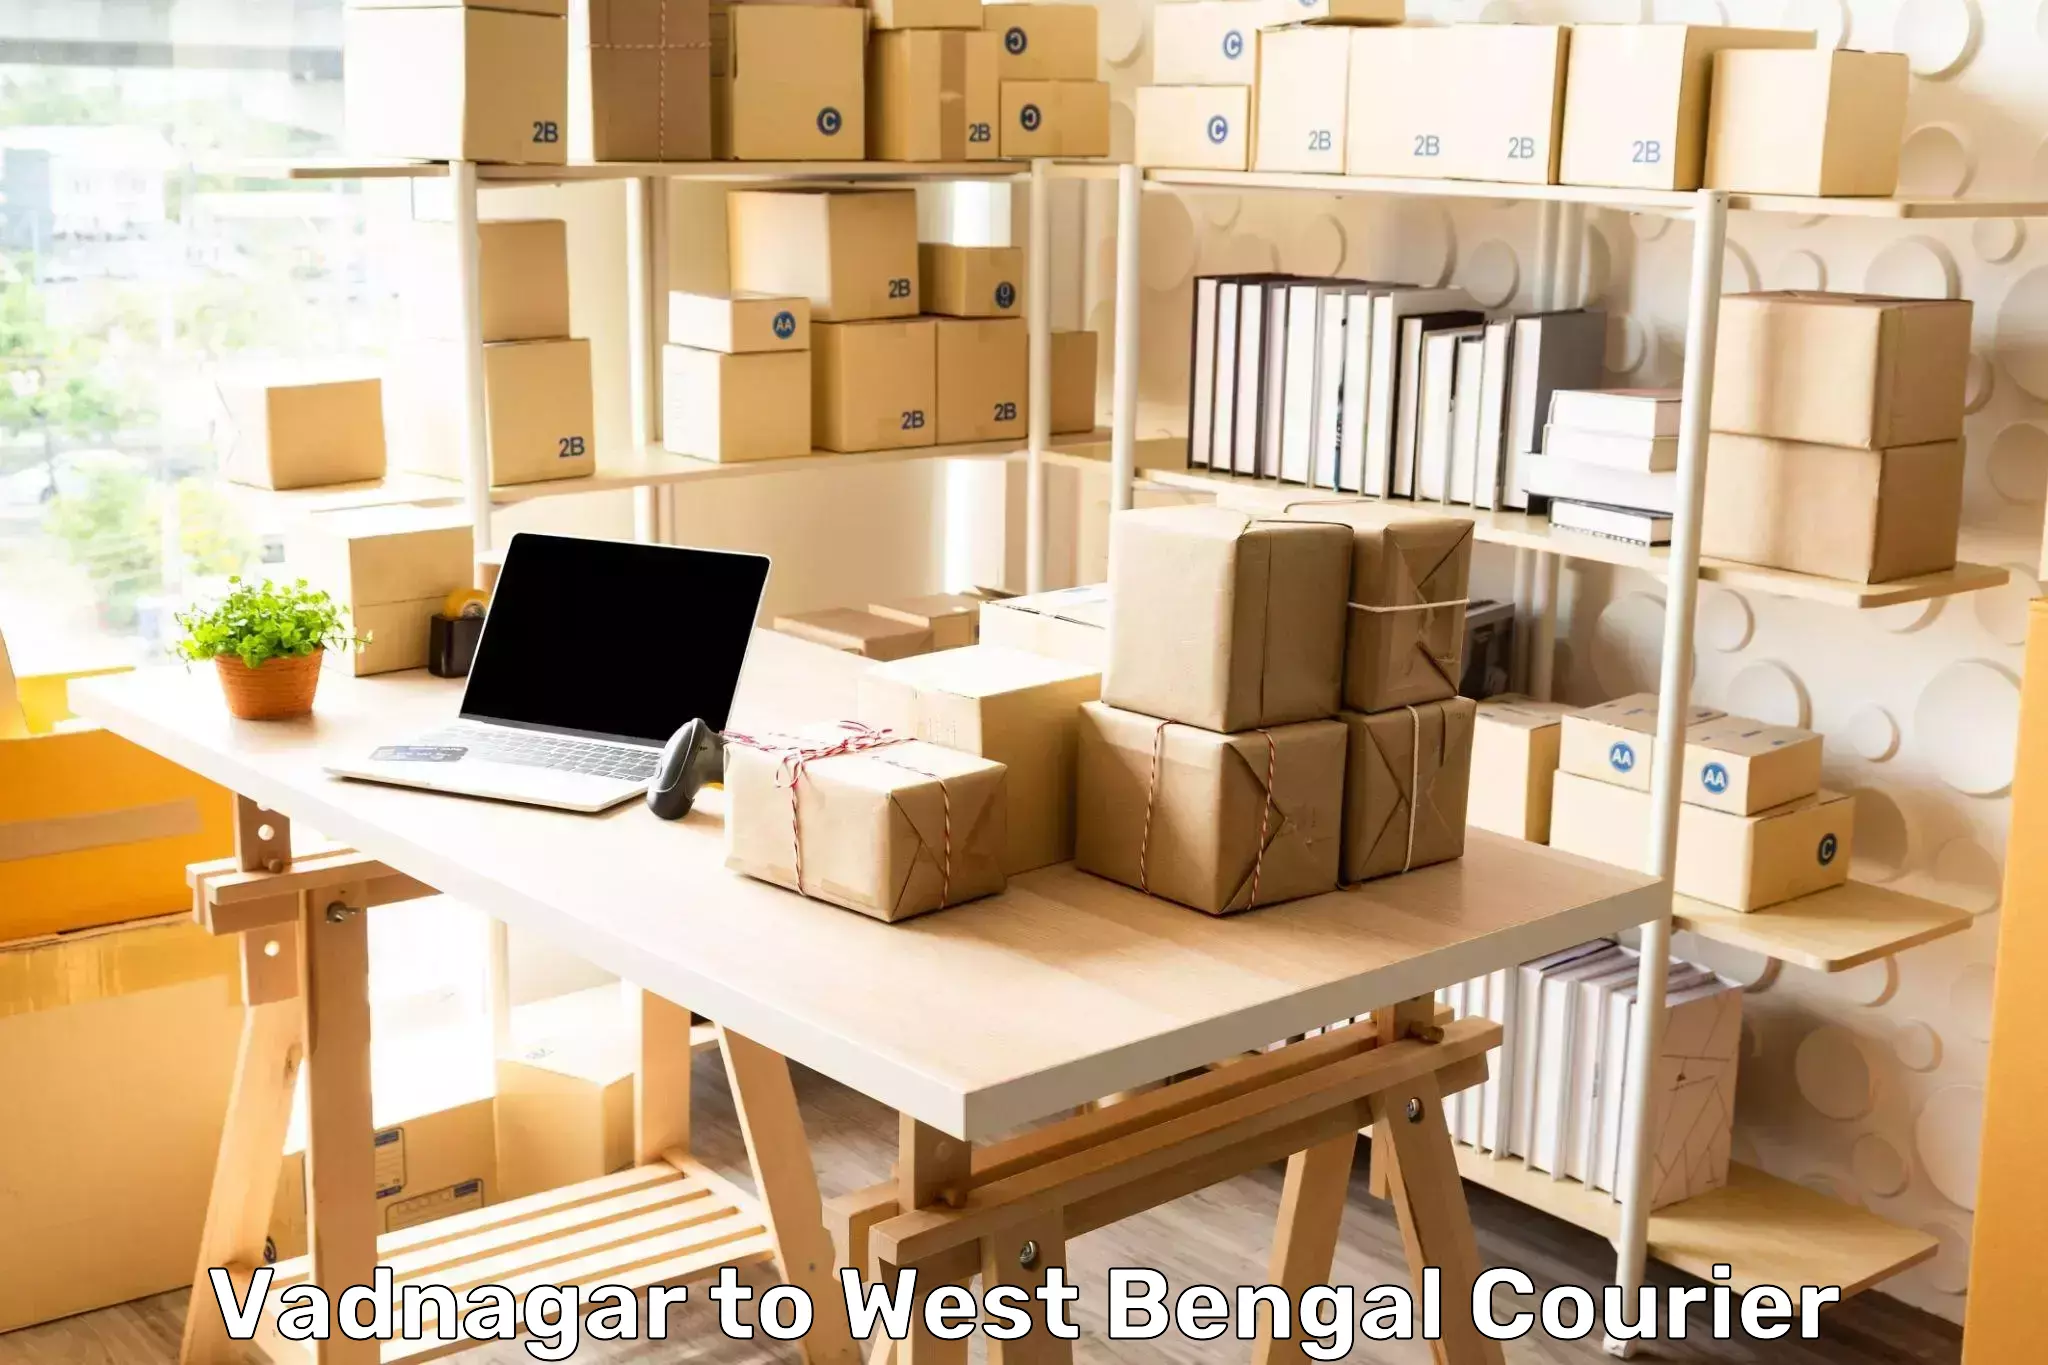 Professional parcel services Vadnagar to Kolaghat